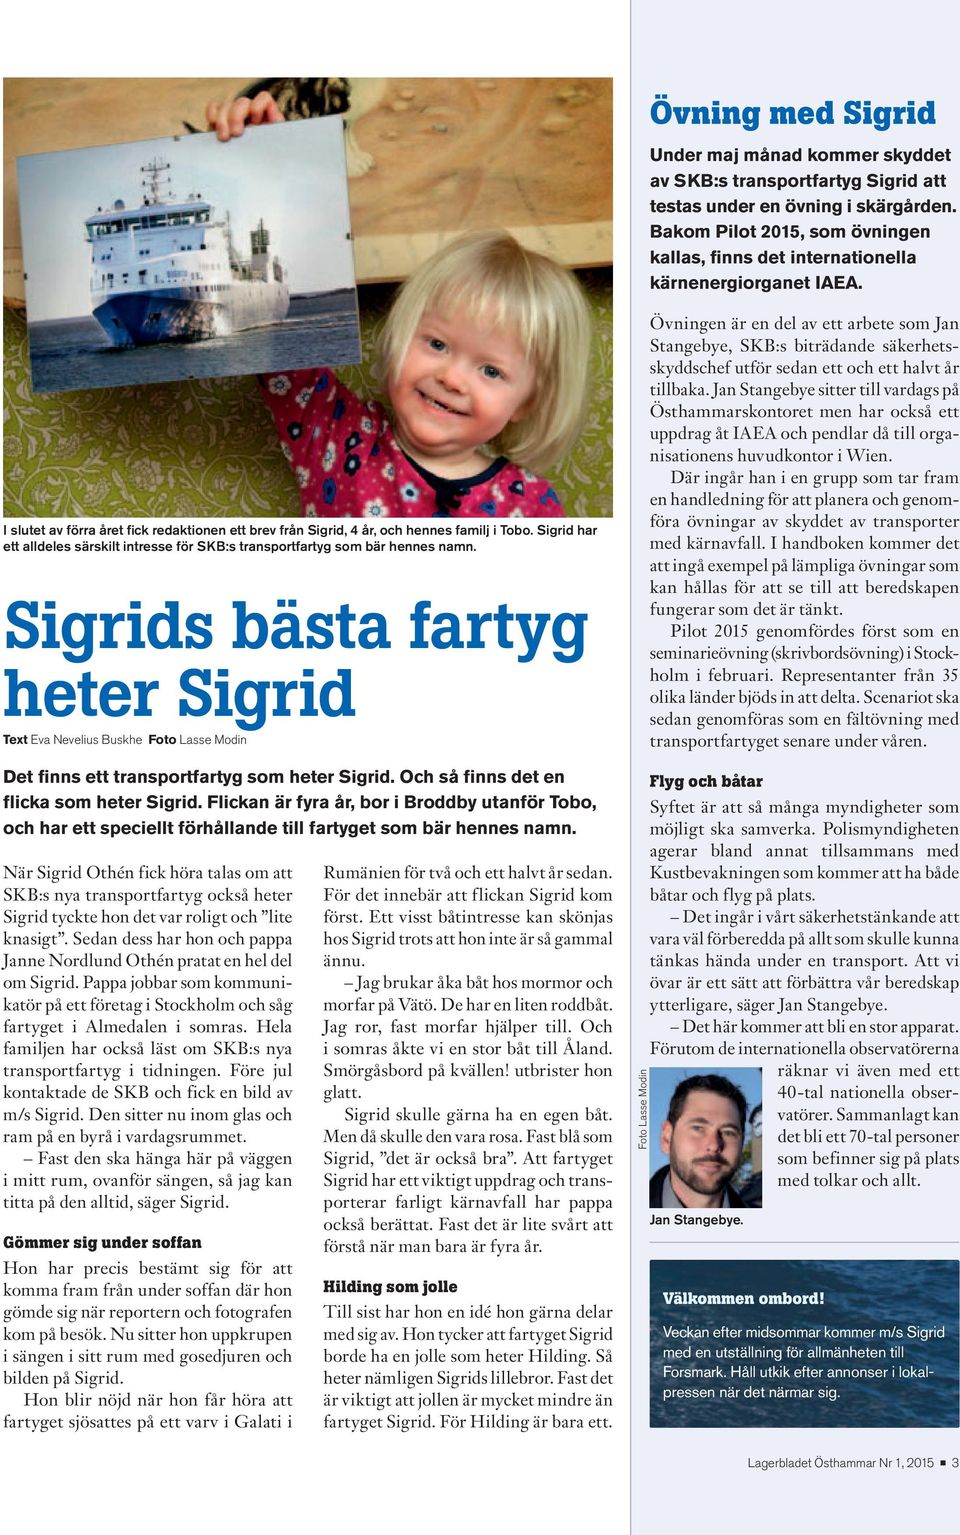 Sigrid har ett alldeles särskilt intresse för SKB:s transportfartyg som bär hennes namn.